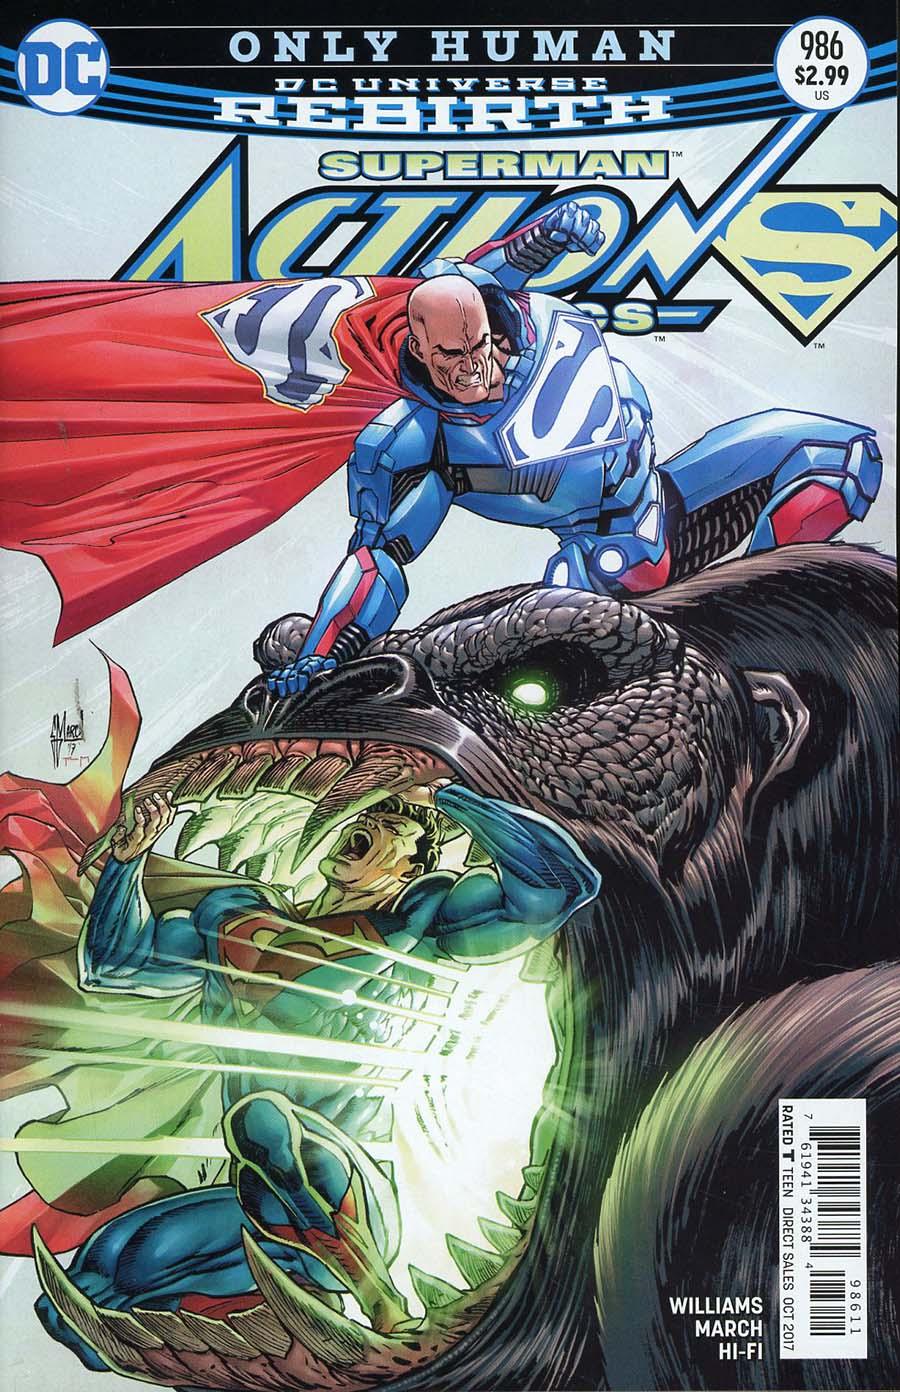 Action Comics Vol. 2 #986